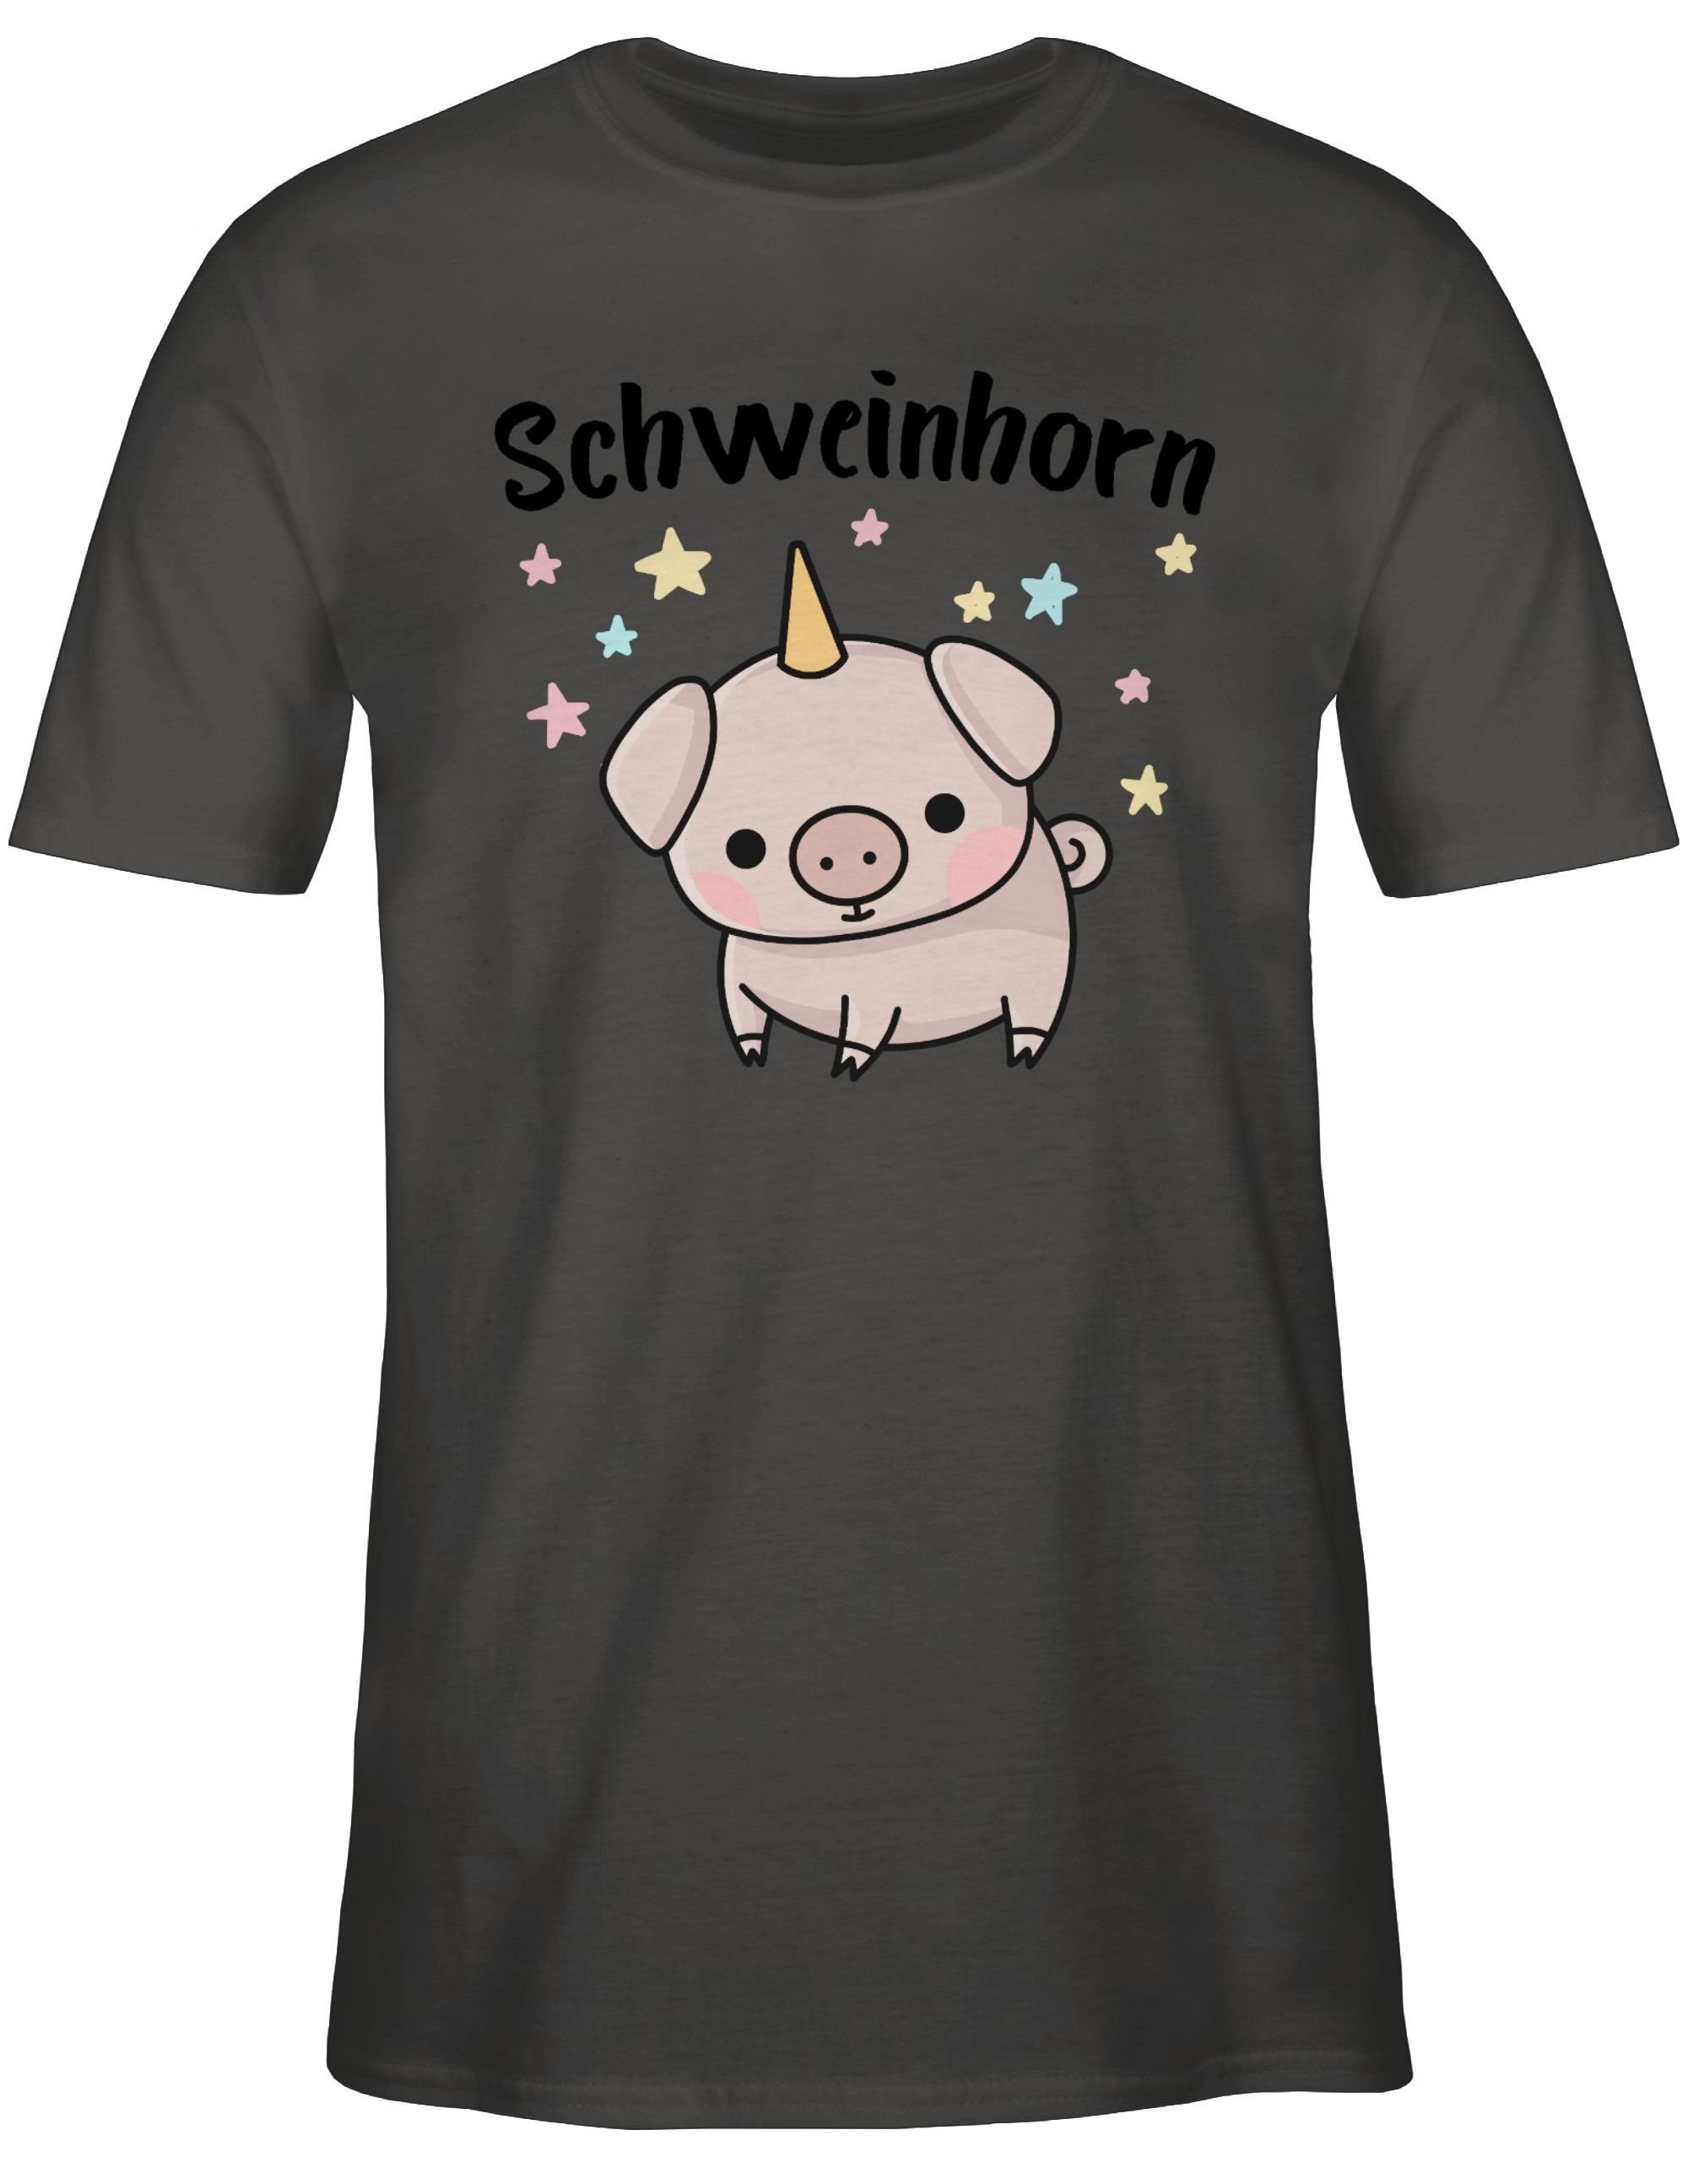 Dunkelgrau 1 Shirtracer T-Shirt Schweinhorn Karneval Outfit